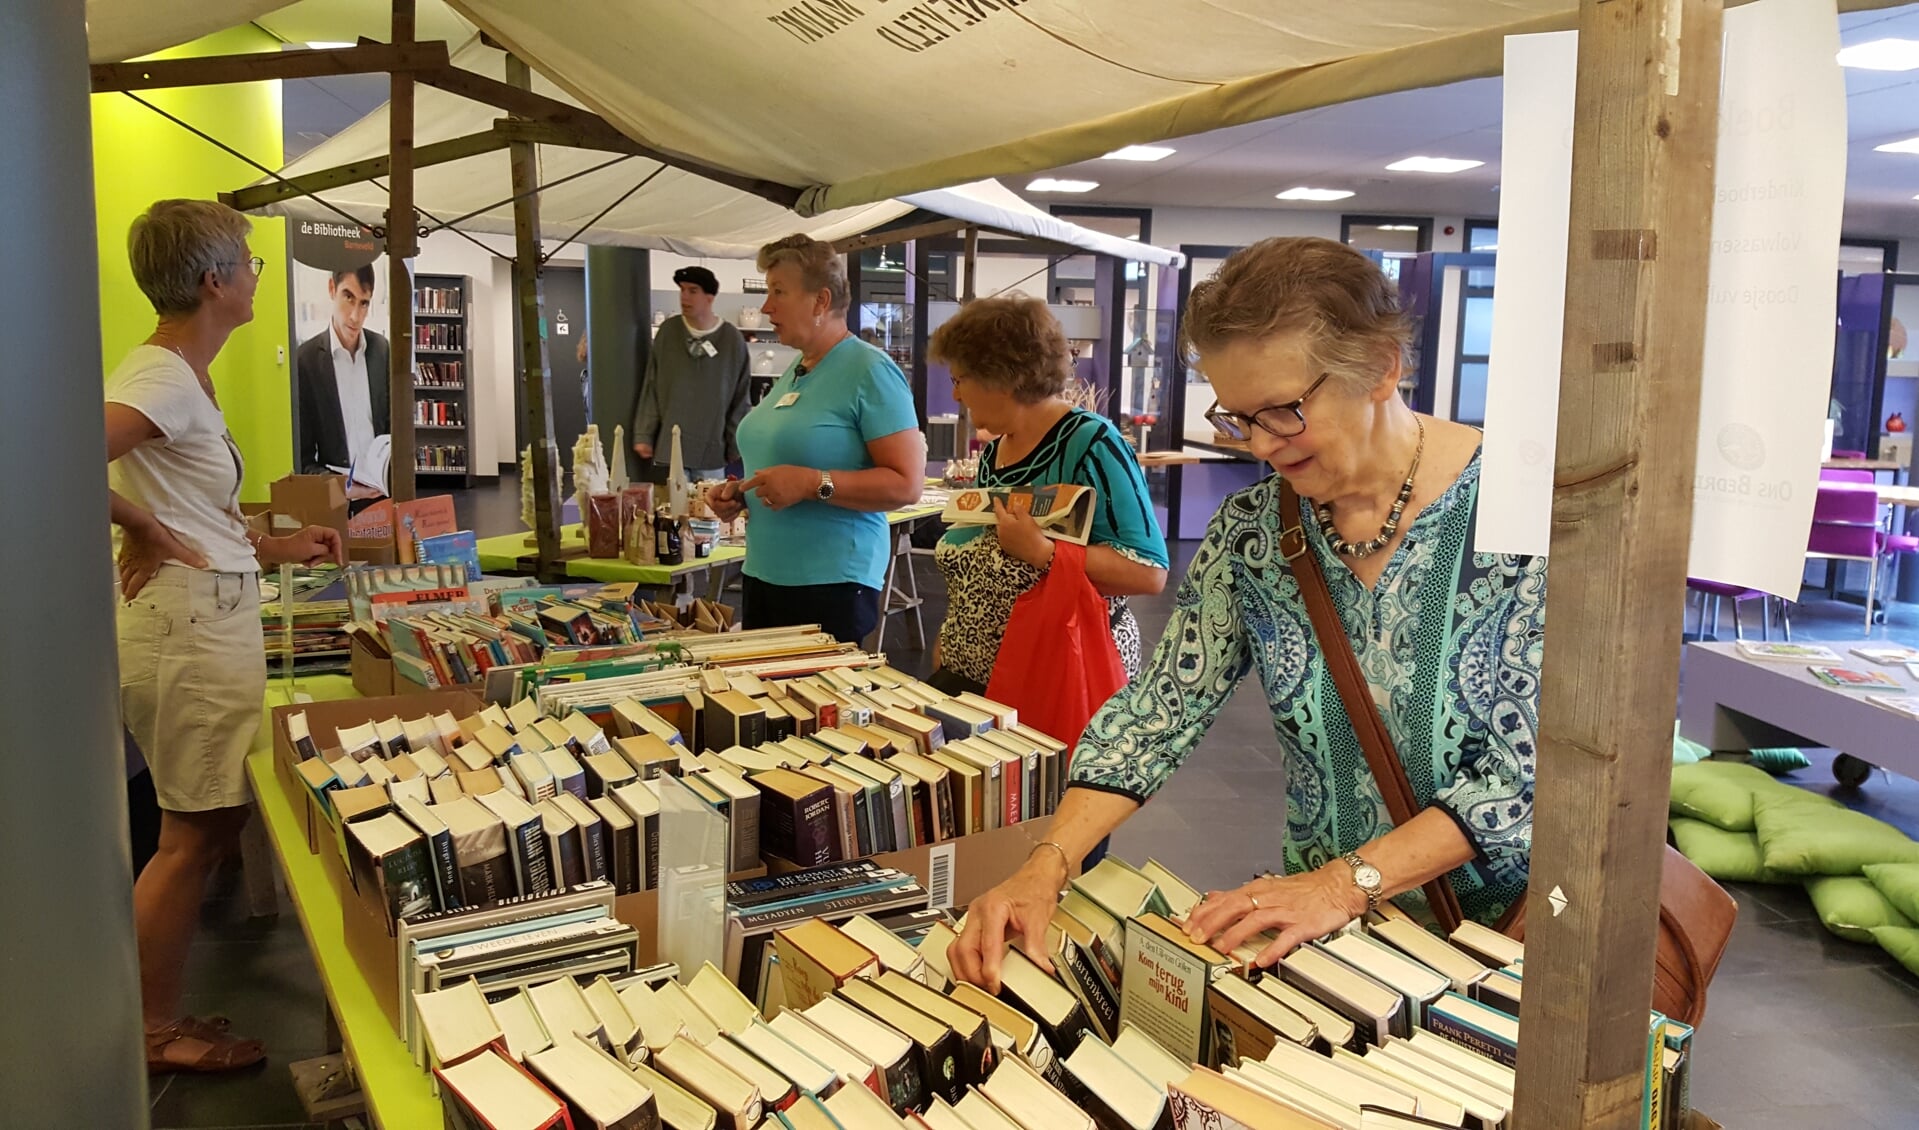 De Boekenmarkt met afgeschreven boeken van de Bibliotheek Barneveld is weer gestart.